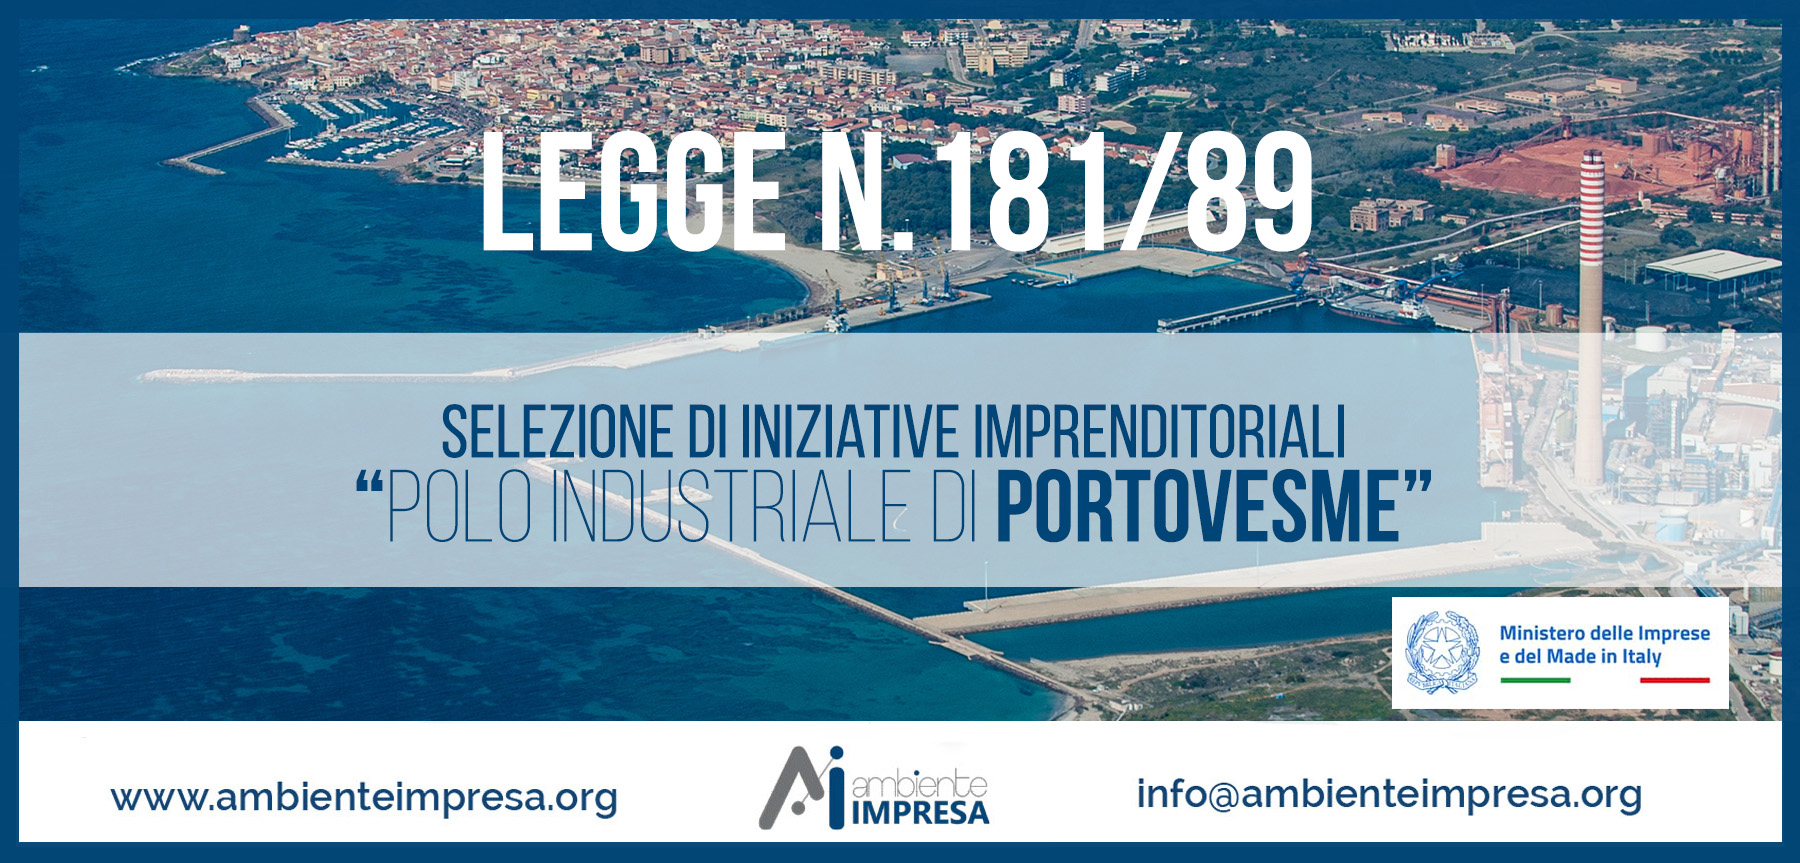 Legge N.181/89 Selezione Iniziative Imprenditoriali " POLO INDUSTRIALE DI PORTOVESME" - Ambiente Impresa srl - Cagliari